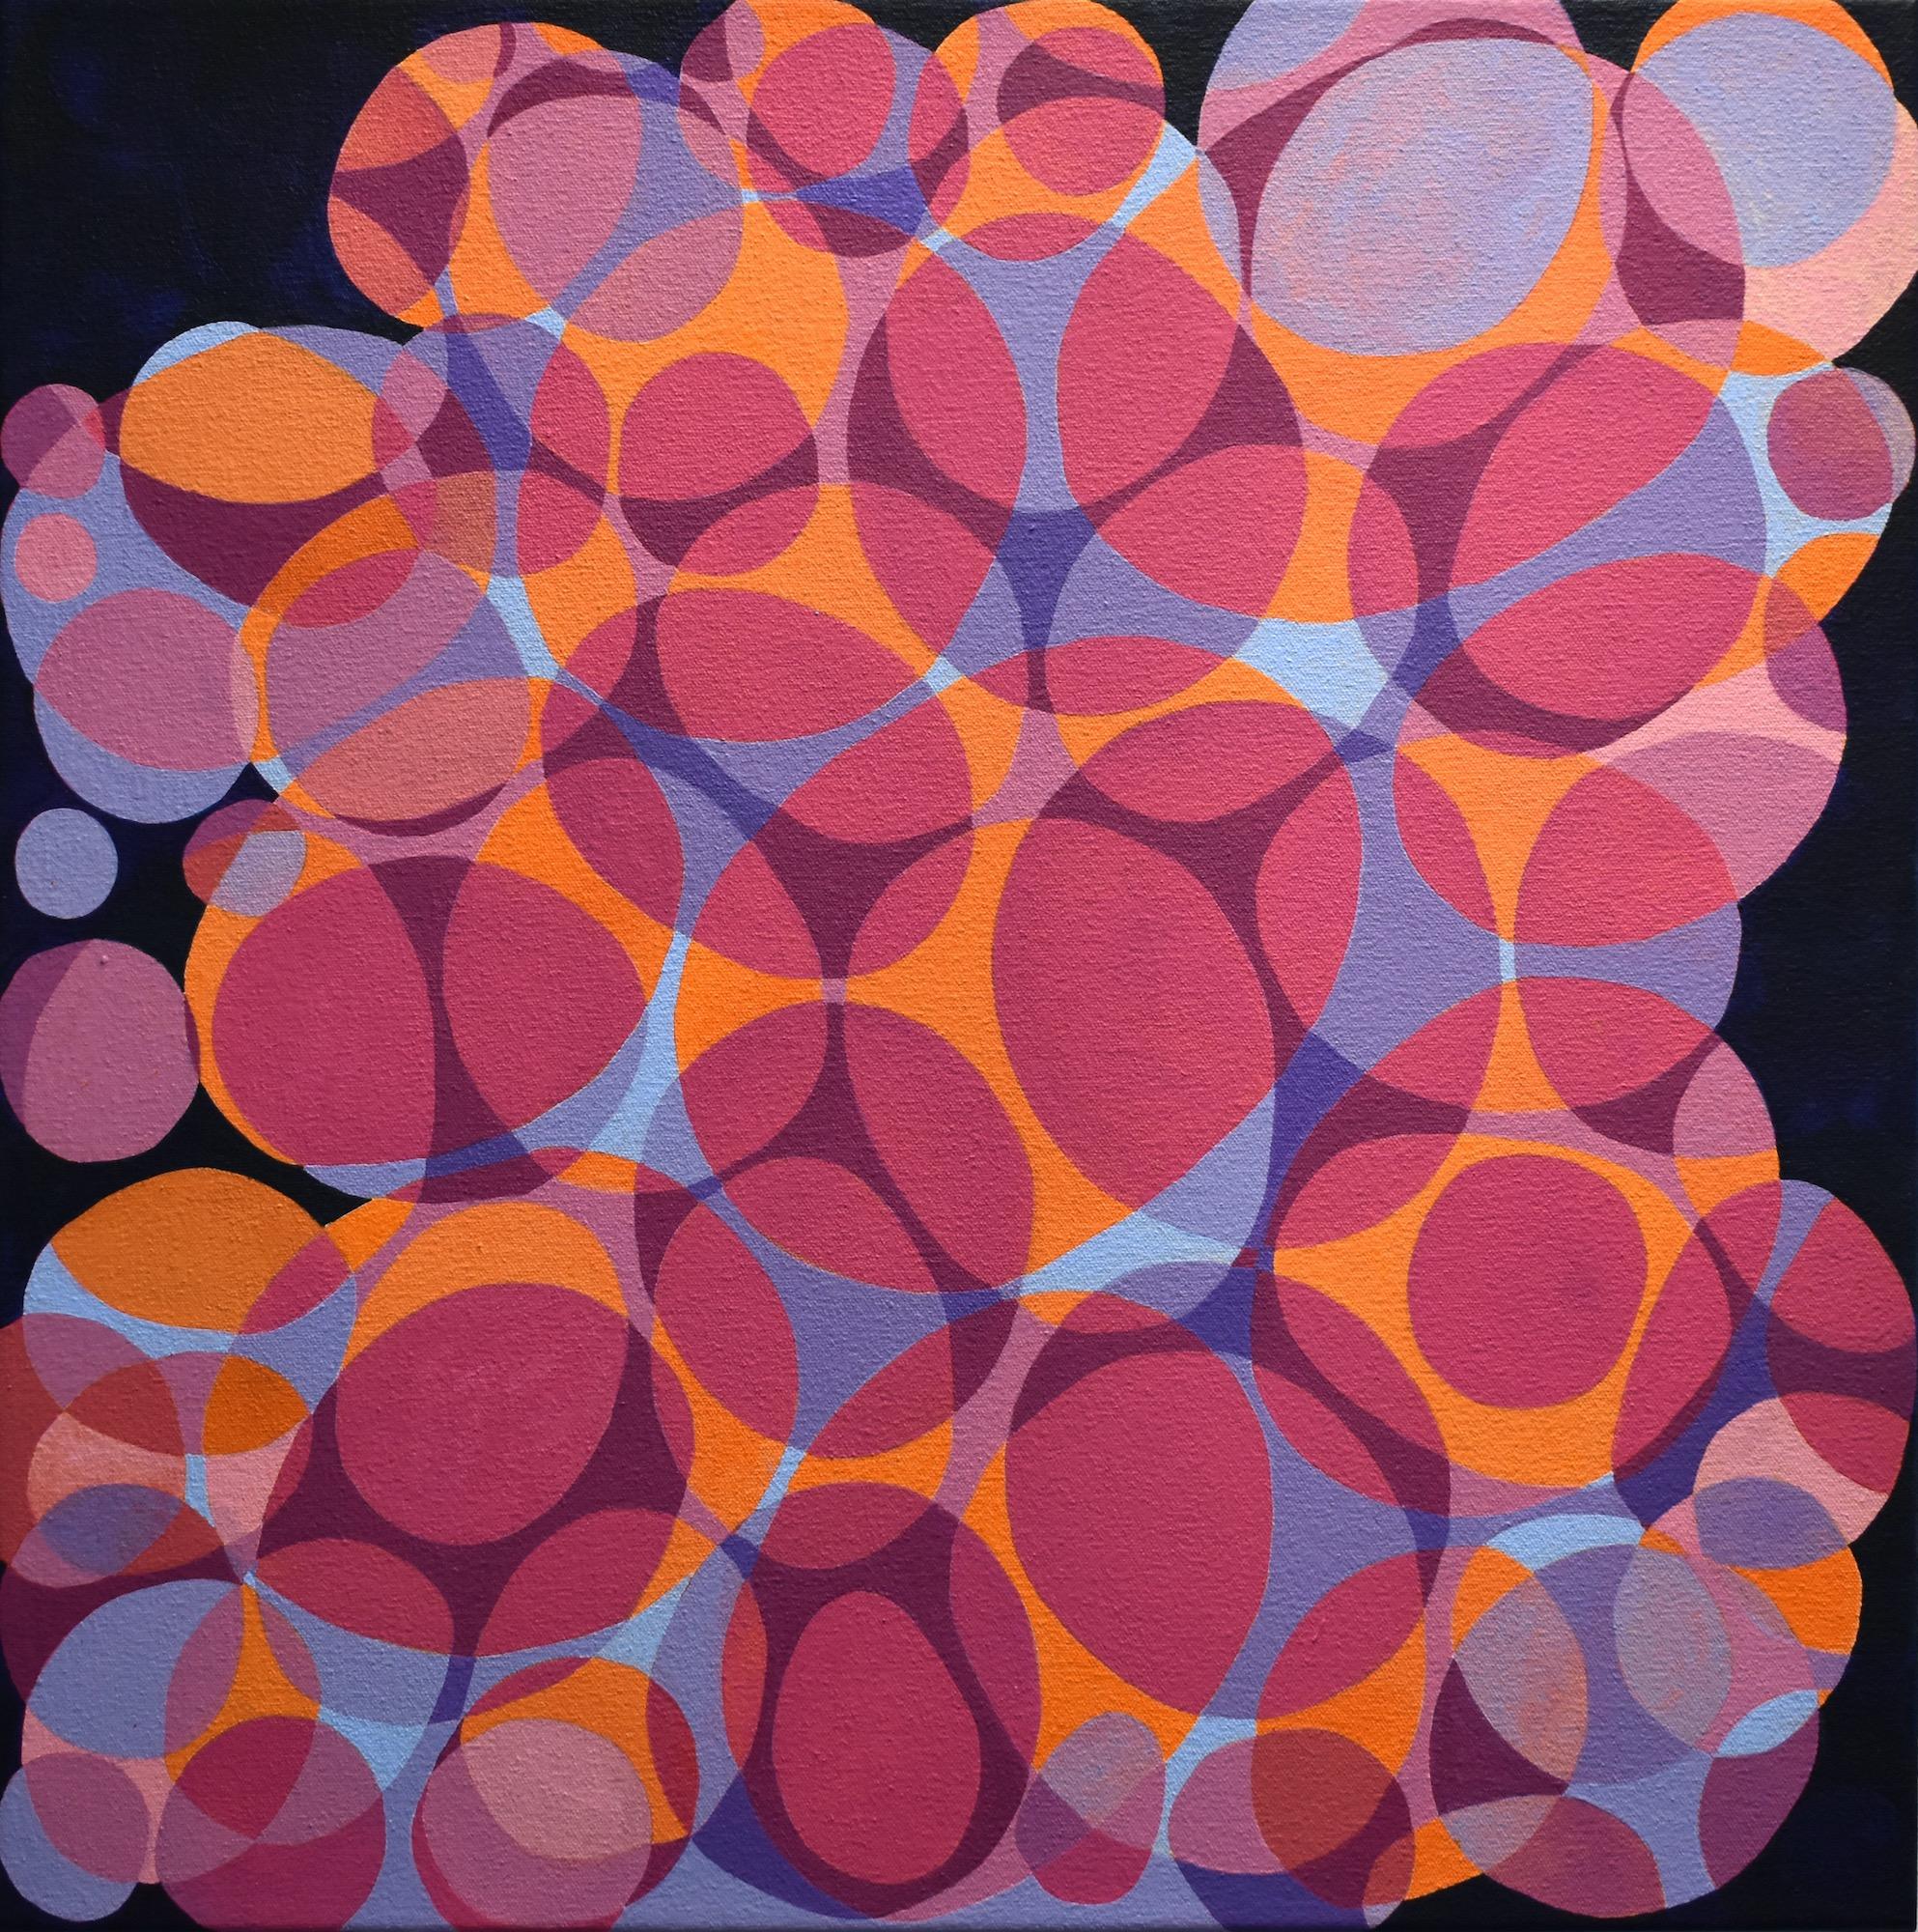 « Coinship 6 », abstrait, webs, bulles, ovales, magenta, orange, peinture acrylique - Painting de Denise Driscoll